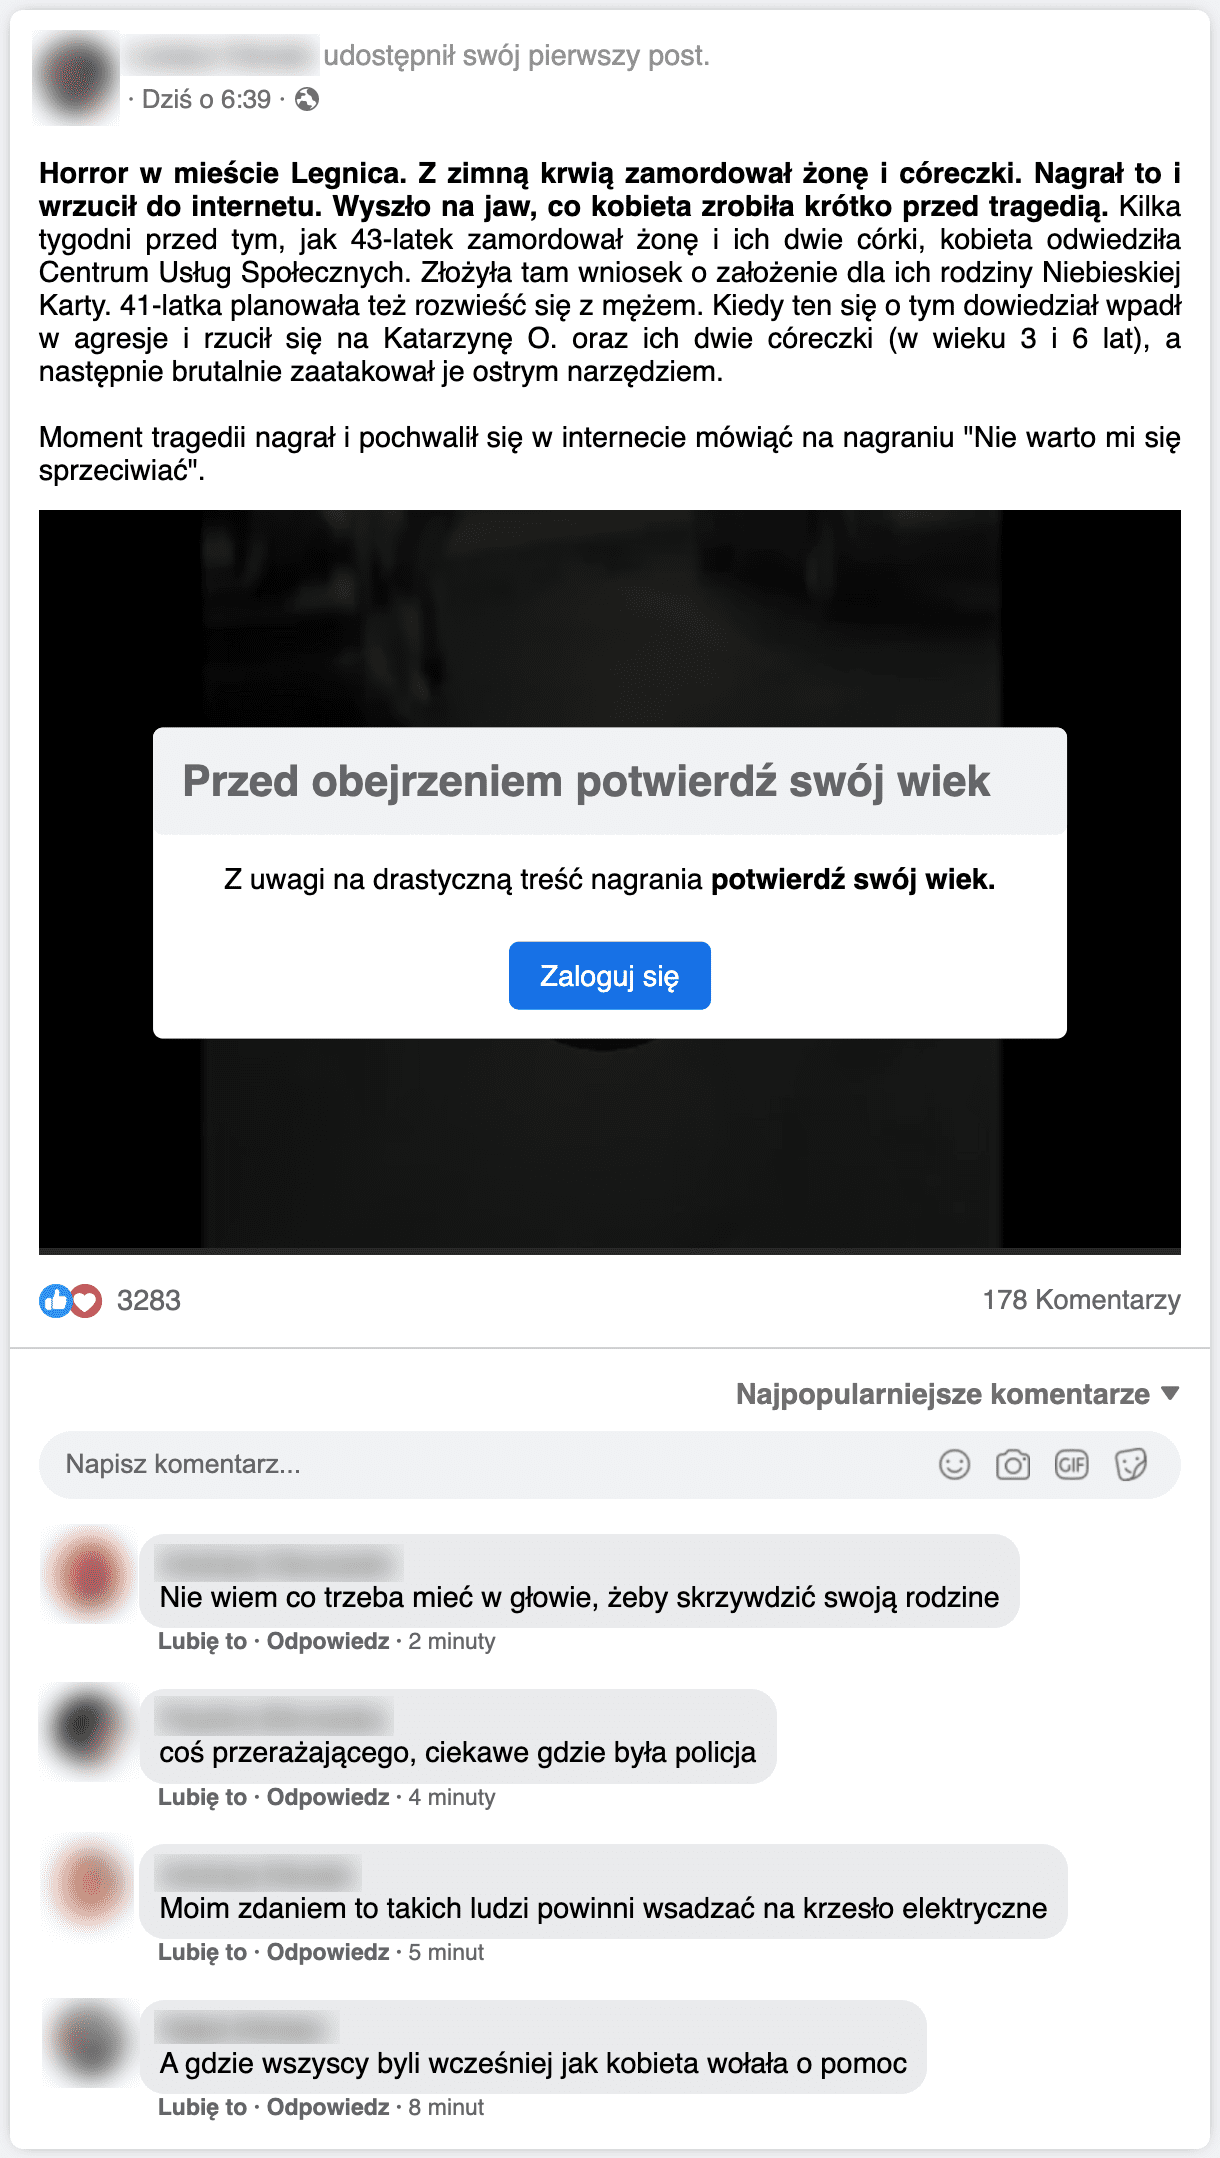 Zrzut ekranu posta ze strony podszywającej się pod Facebooka. Pod postem umieszczono wideo, które zostało zablokowane przez ekran obowiązkowego logowania. Niżej są komentarze użytkowników.